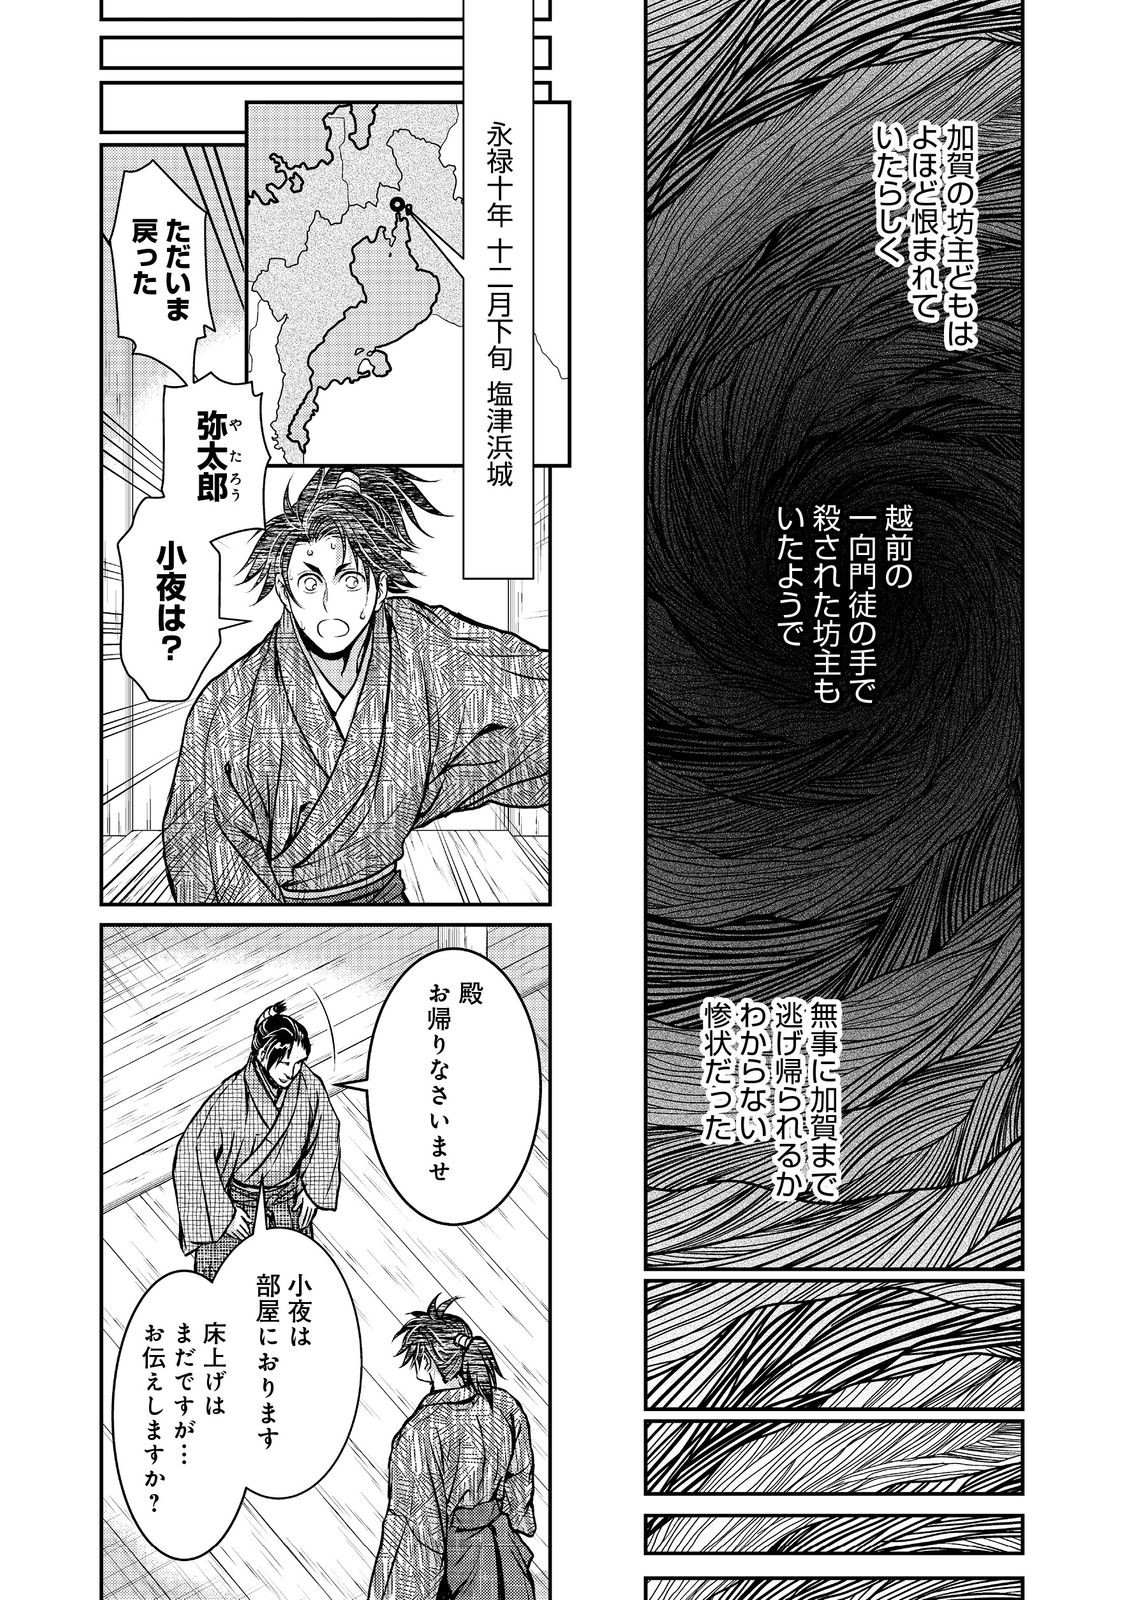 Afumi no Umi – Minamo ga Yureru Toki - Chapter 35 - Page 25